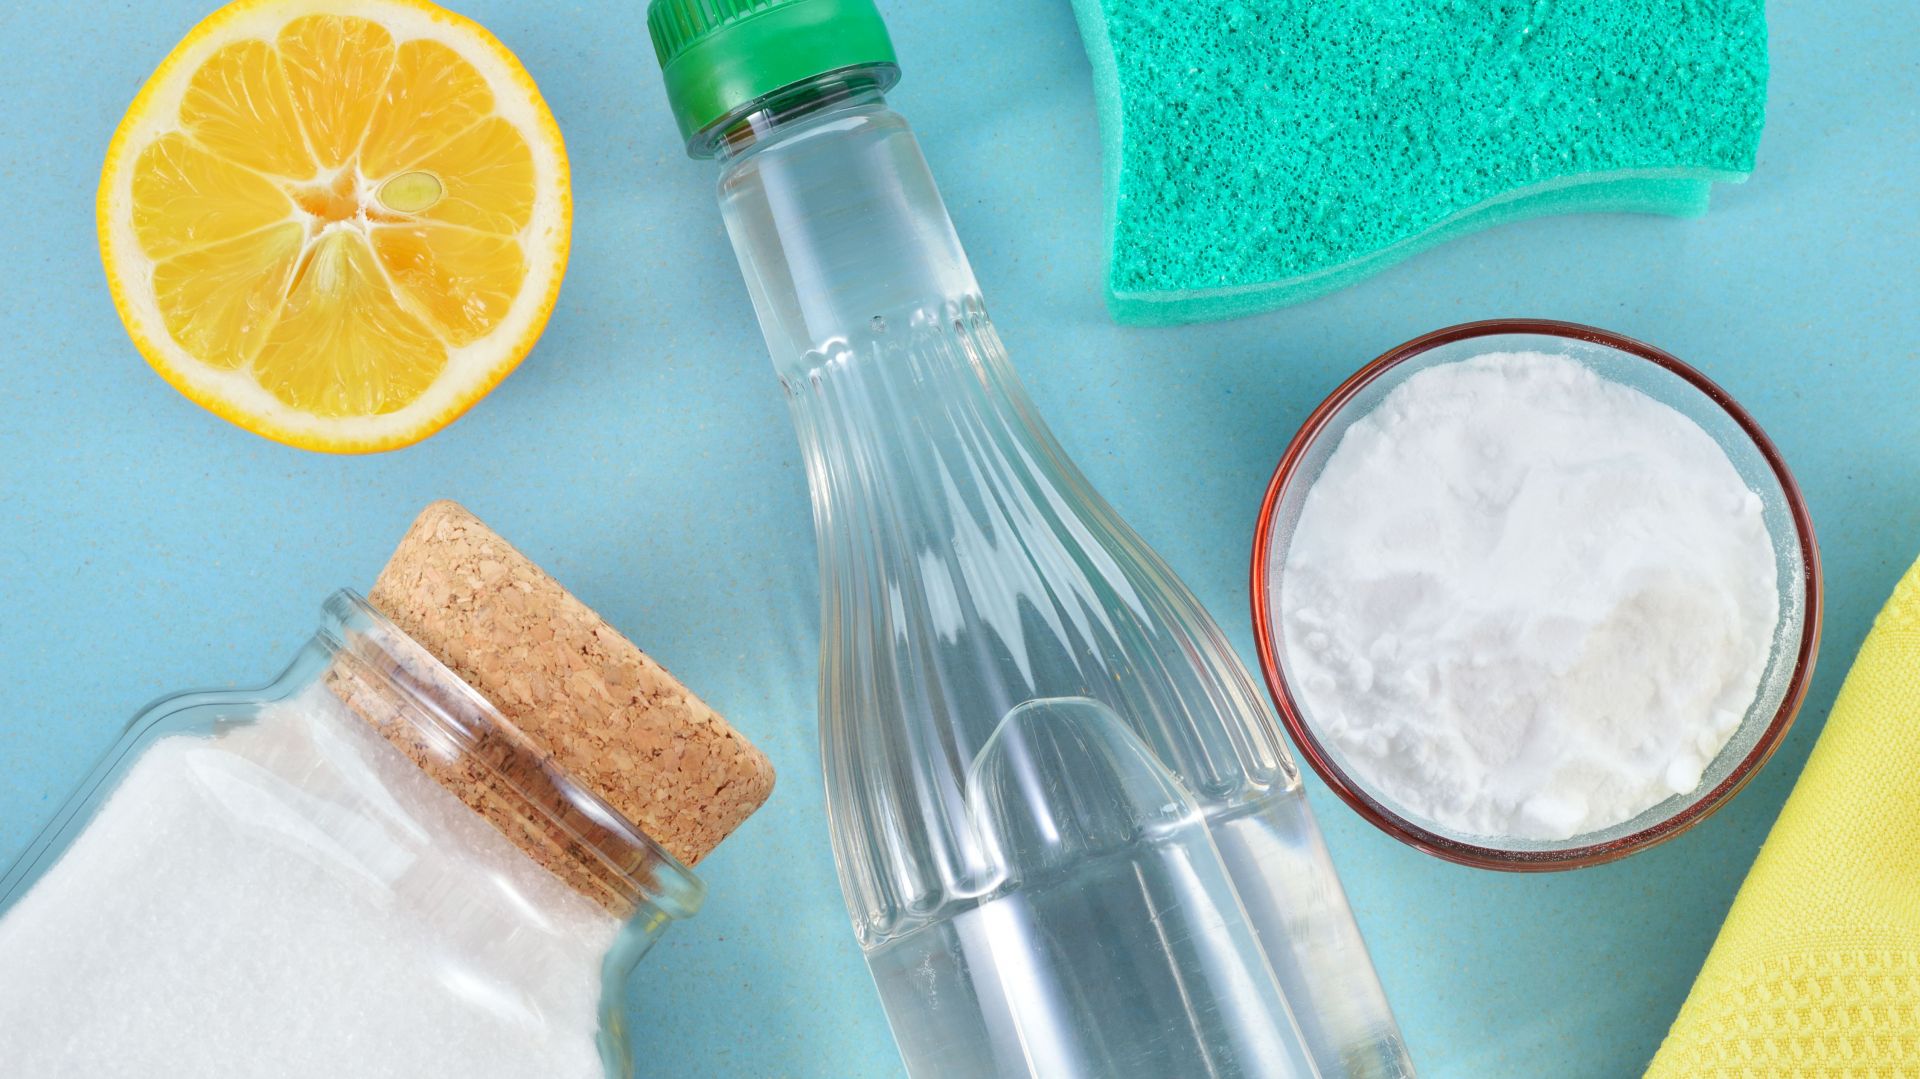 Wiosenne porządki bez detergentów. 5 sprawdzonych sposobów